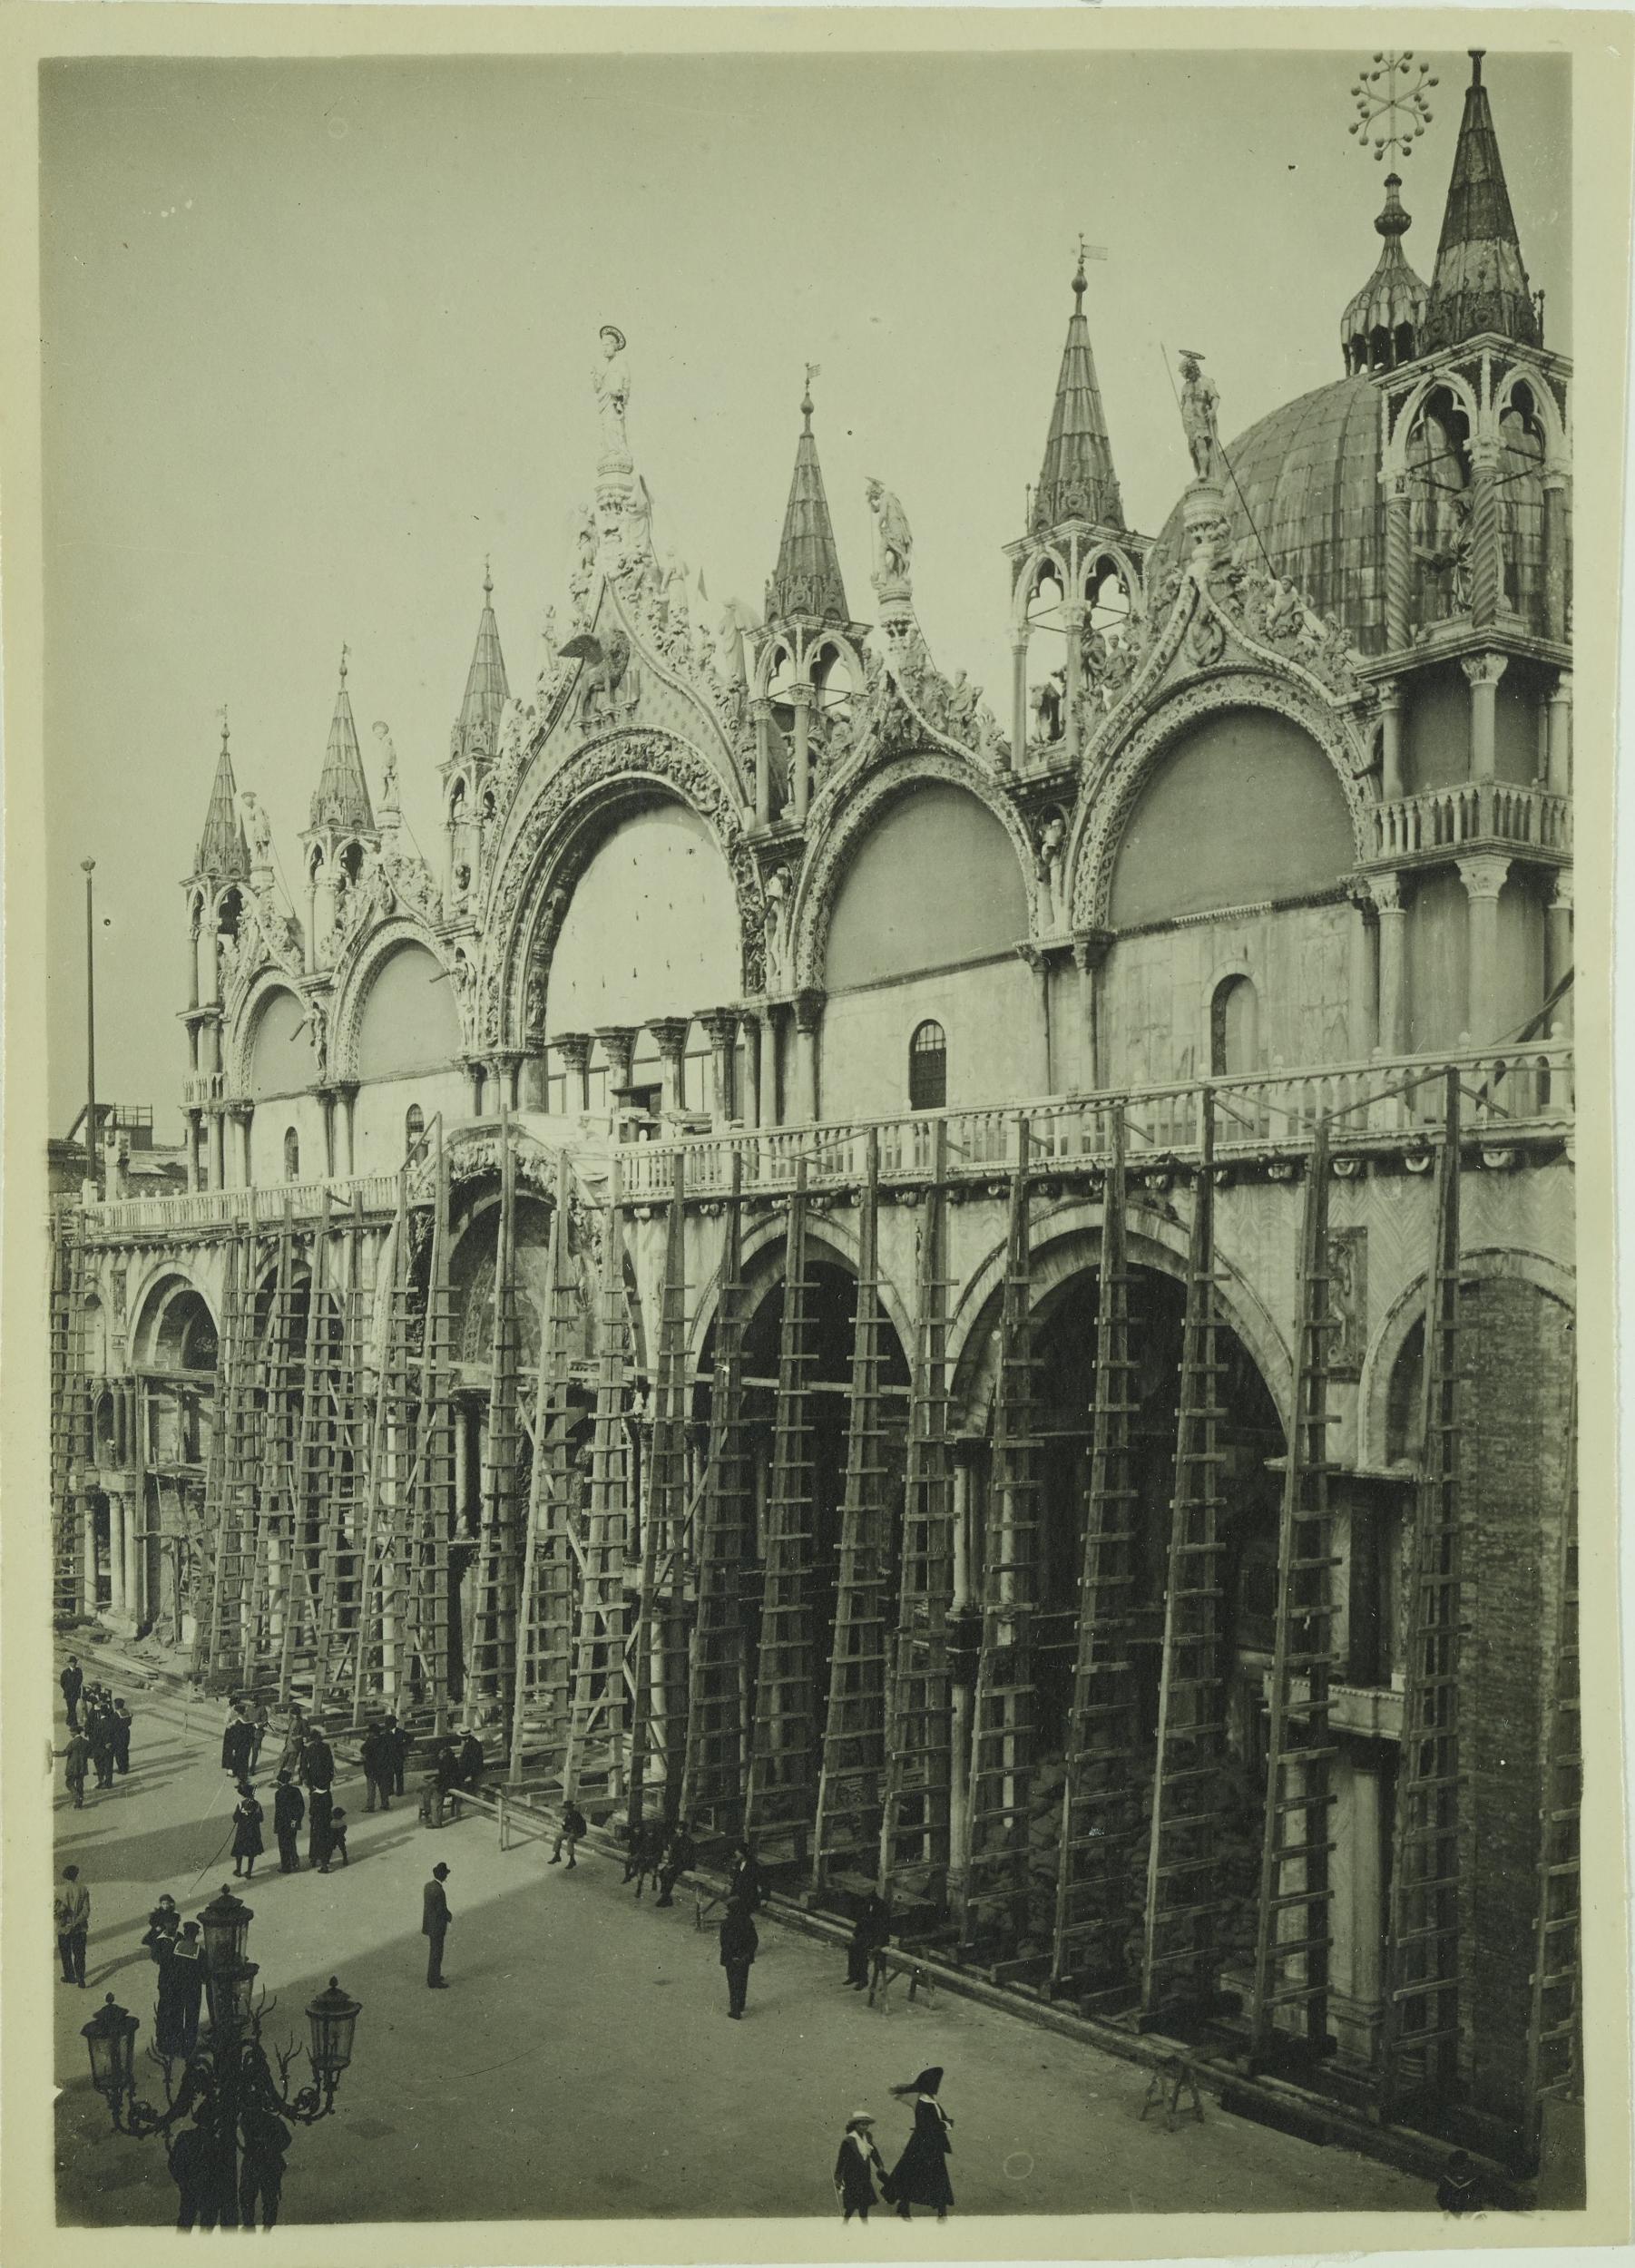 Fotografo non identificato, Venezia - Basilica di S. Marco, facciata, protezione anti bellica, gelatina ai sali d'argento, MPI153022